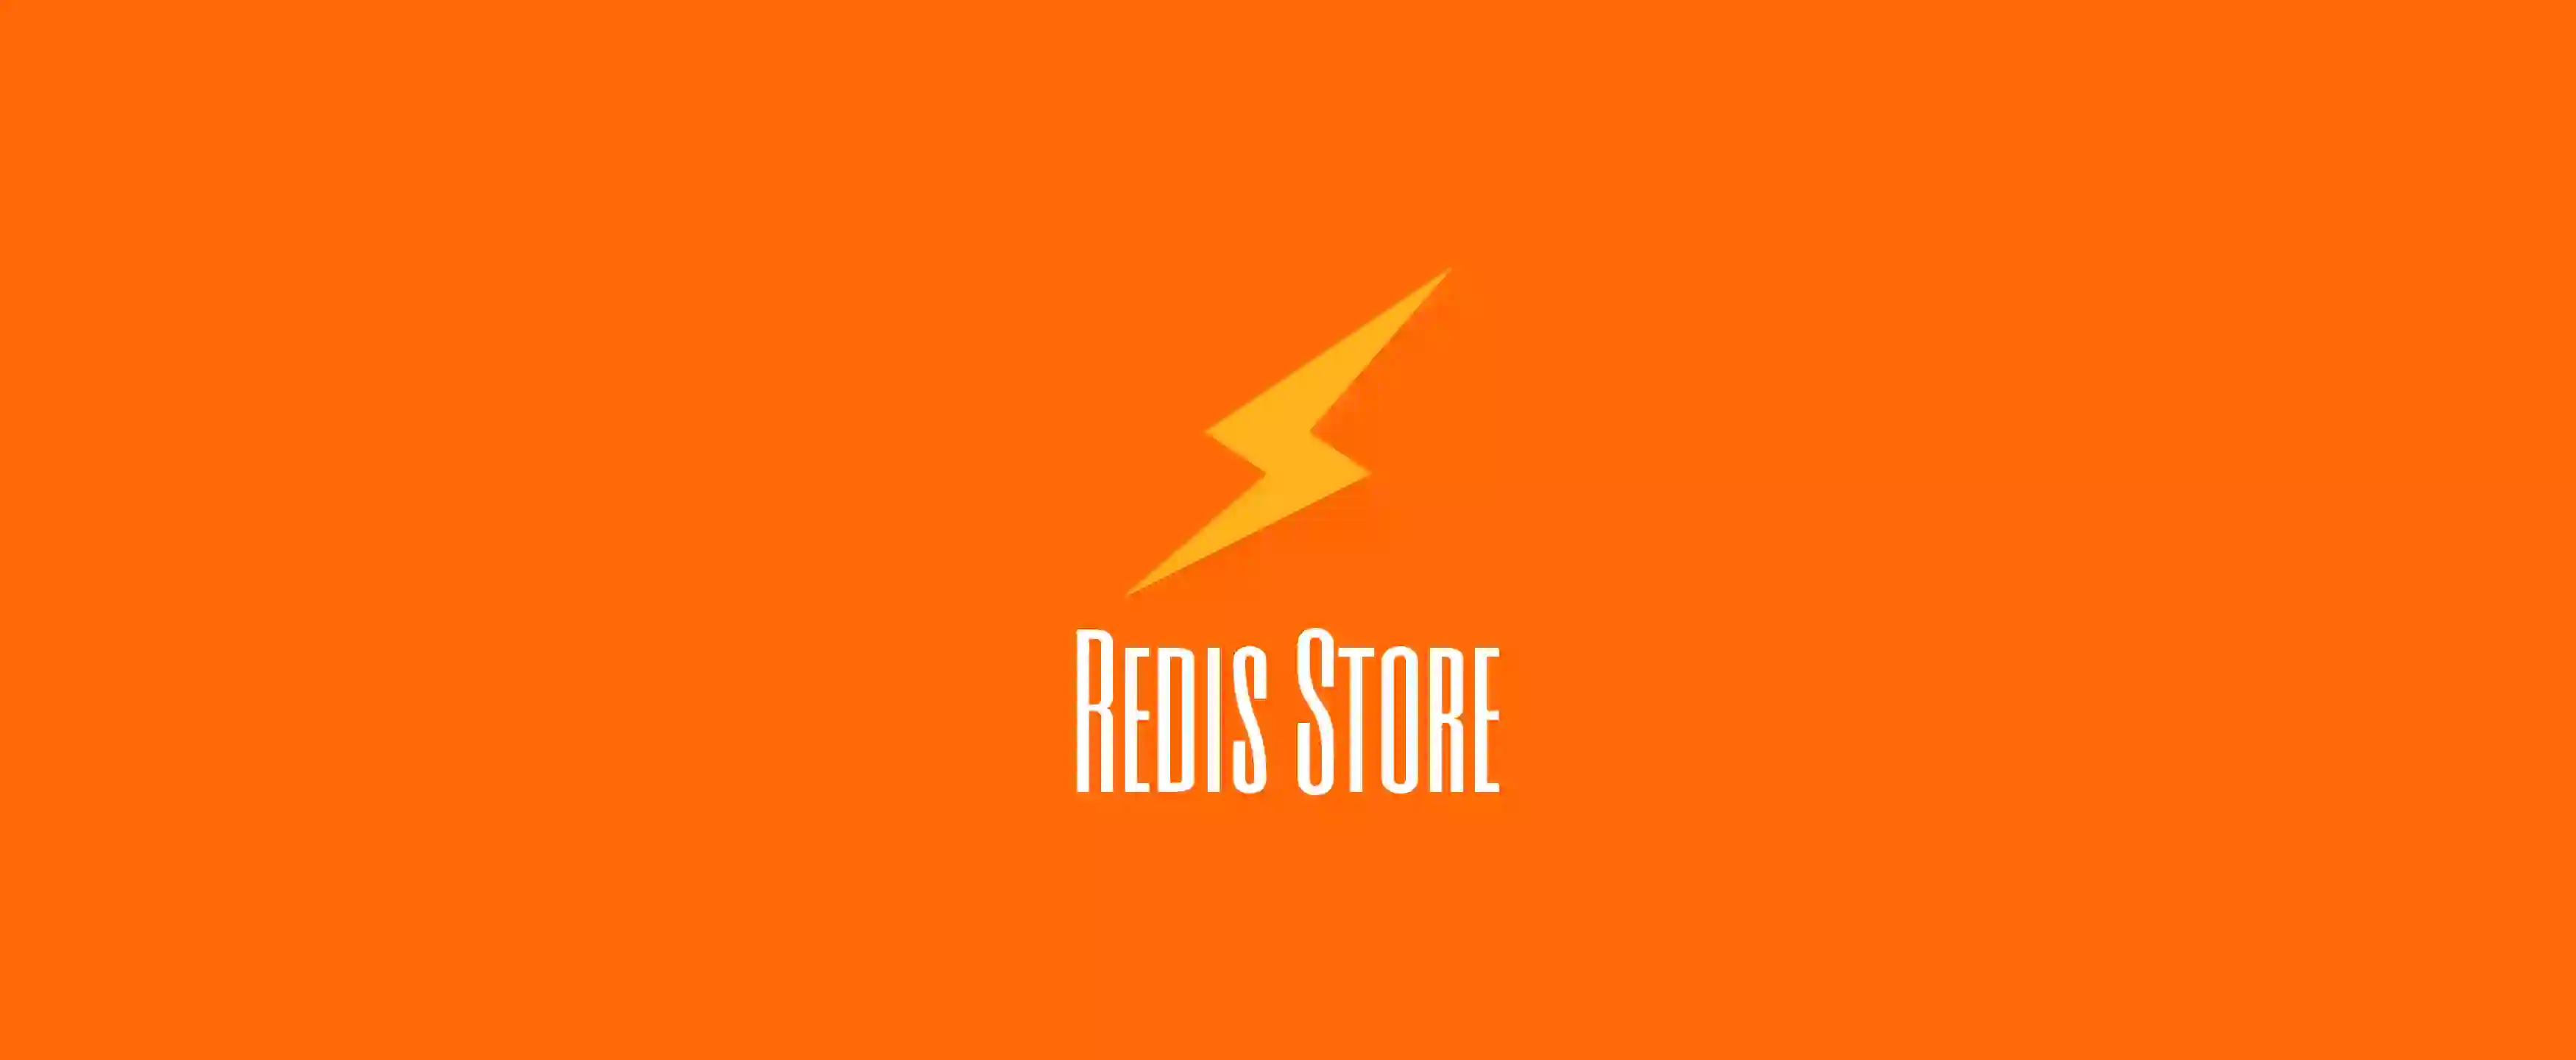 RedisStore